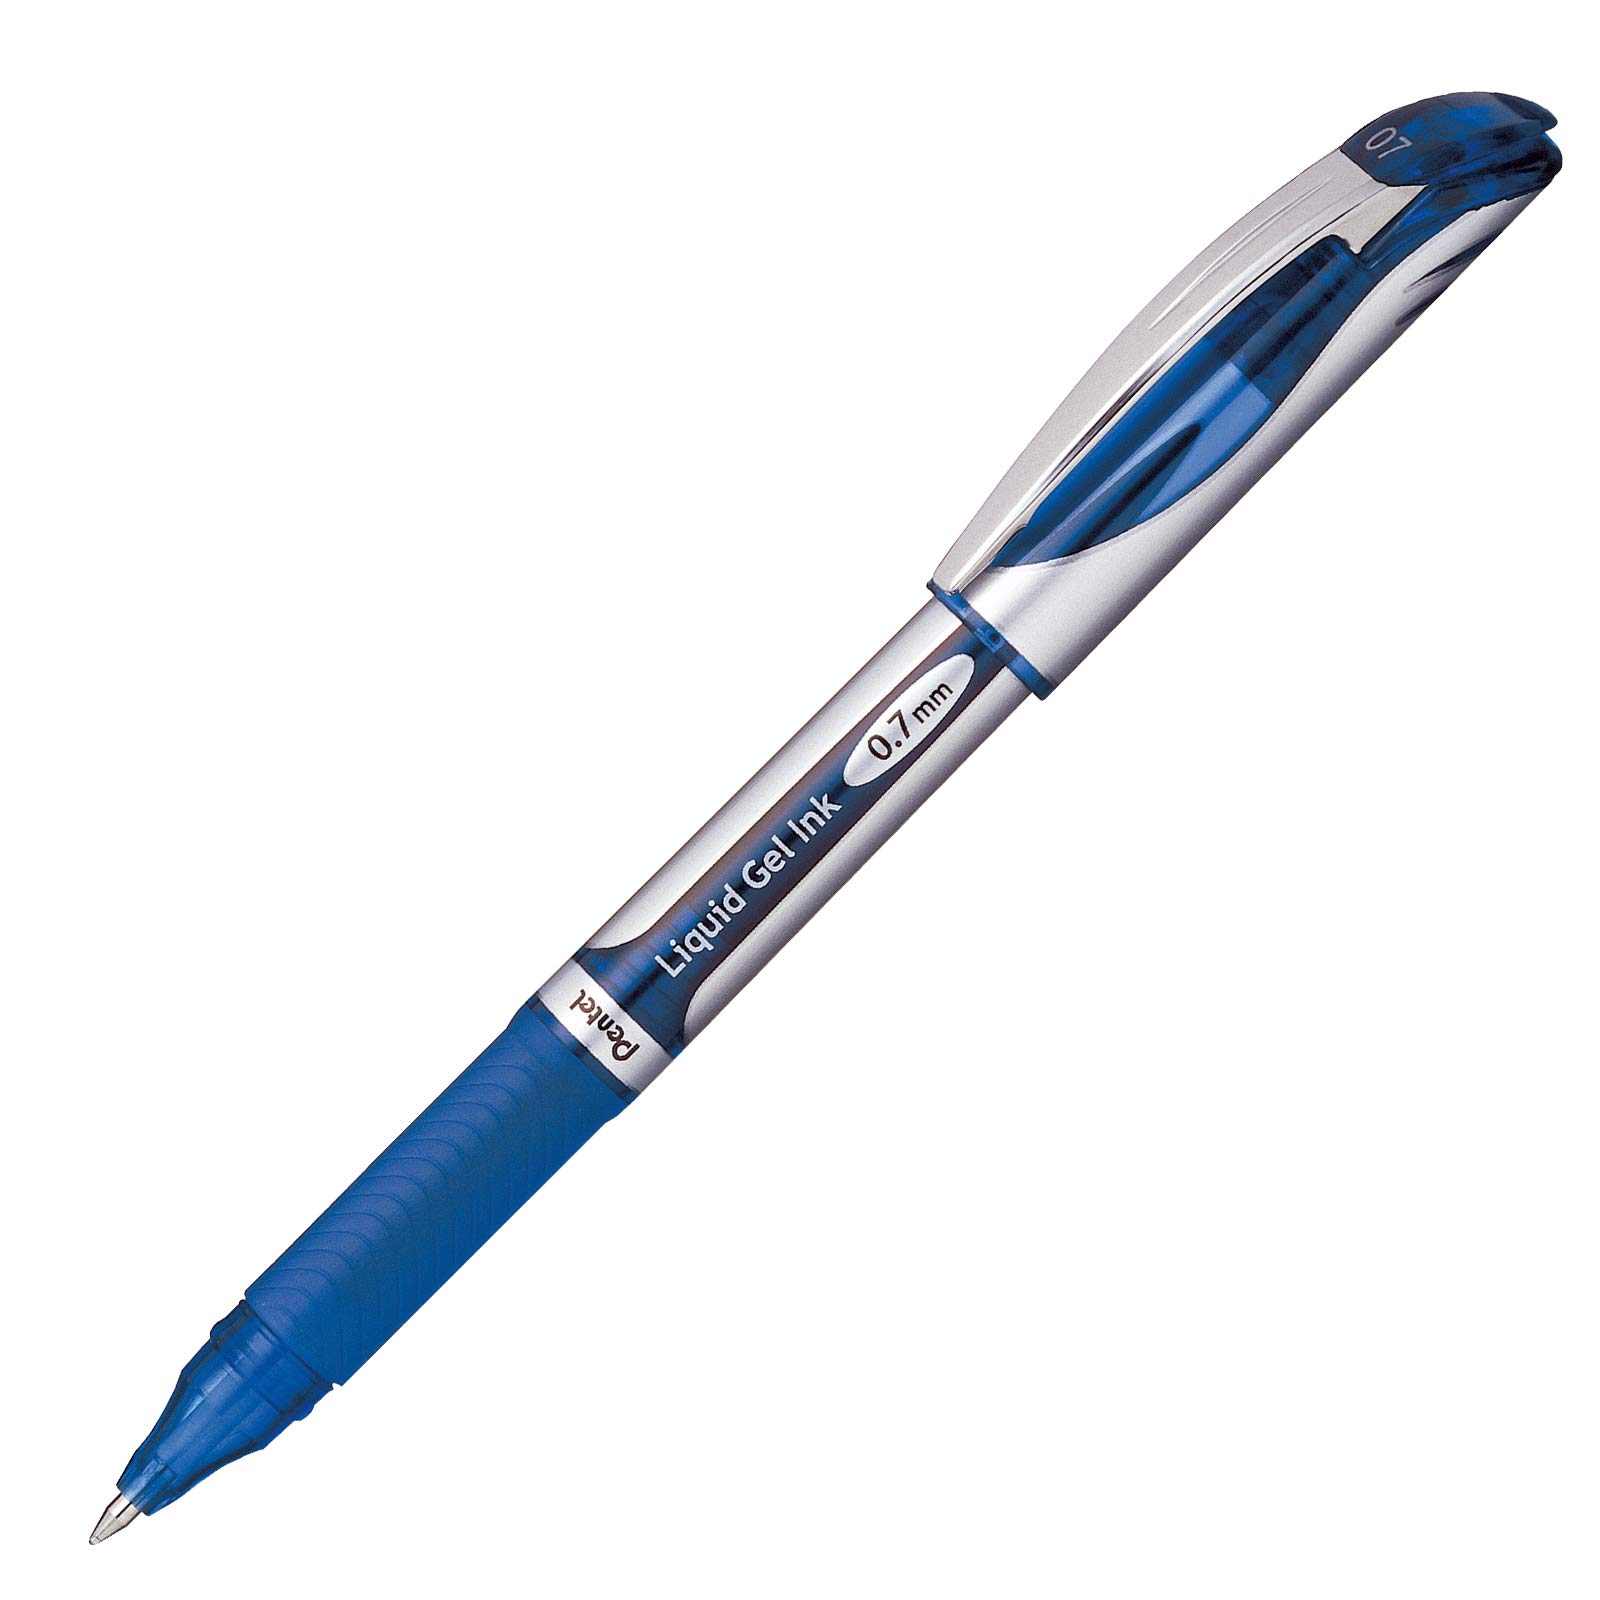 Bolígrafo Pentel energel delux, punto 0. Bolígrafo Pentel energel delux tinta azul de secado rápido, con agarre de caucho, no mancha, punta 0.7 mm metálica de trazo mediano, hecho 50% de material reciclado, escritura suave y ligera. detalles en tapa al color de la tinta                           7 mm (mediano), tinta azul, 1 pieza      - BL57-C